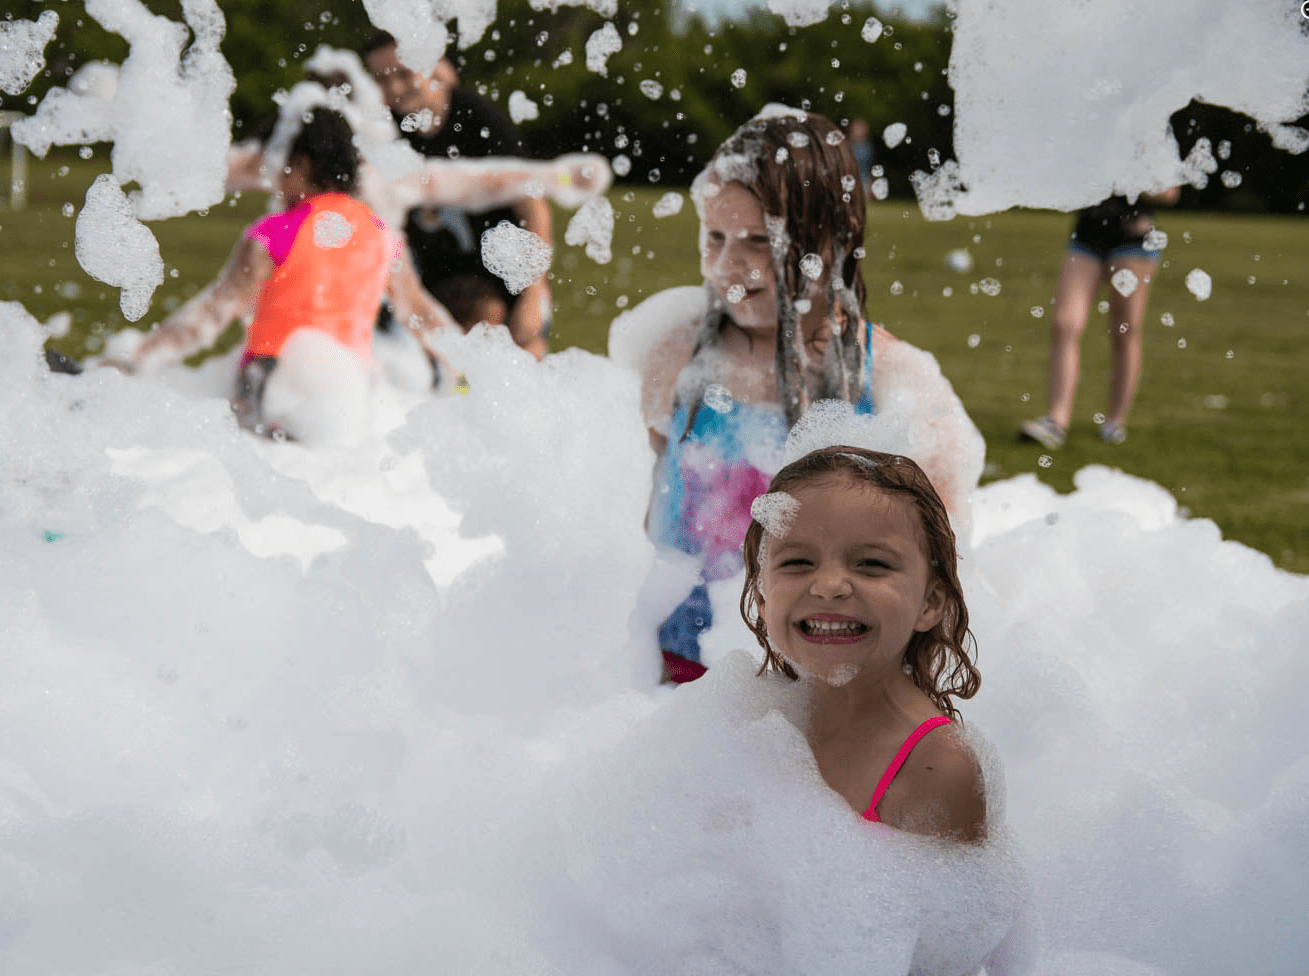 Fun foam party in Montgomery County, PA by Foam Boss.